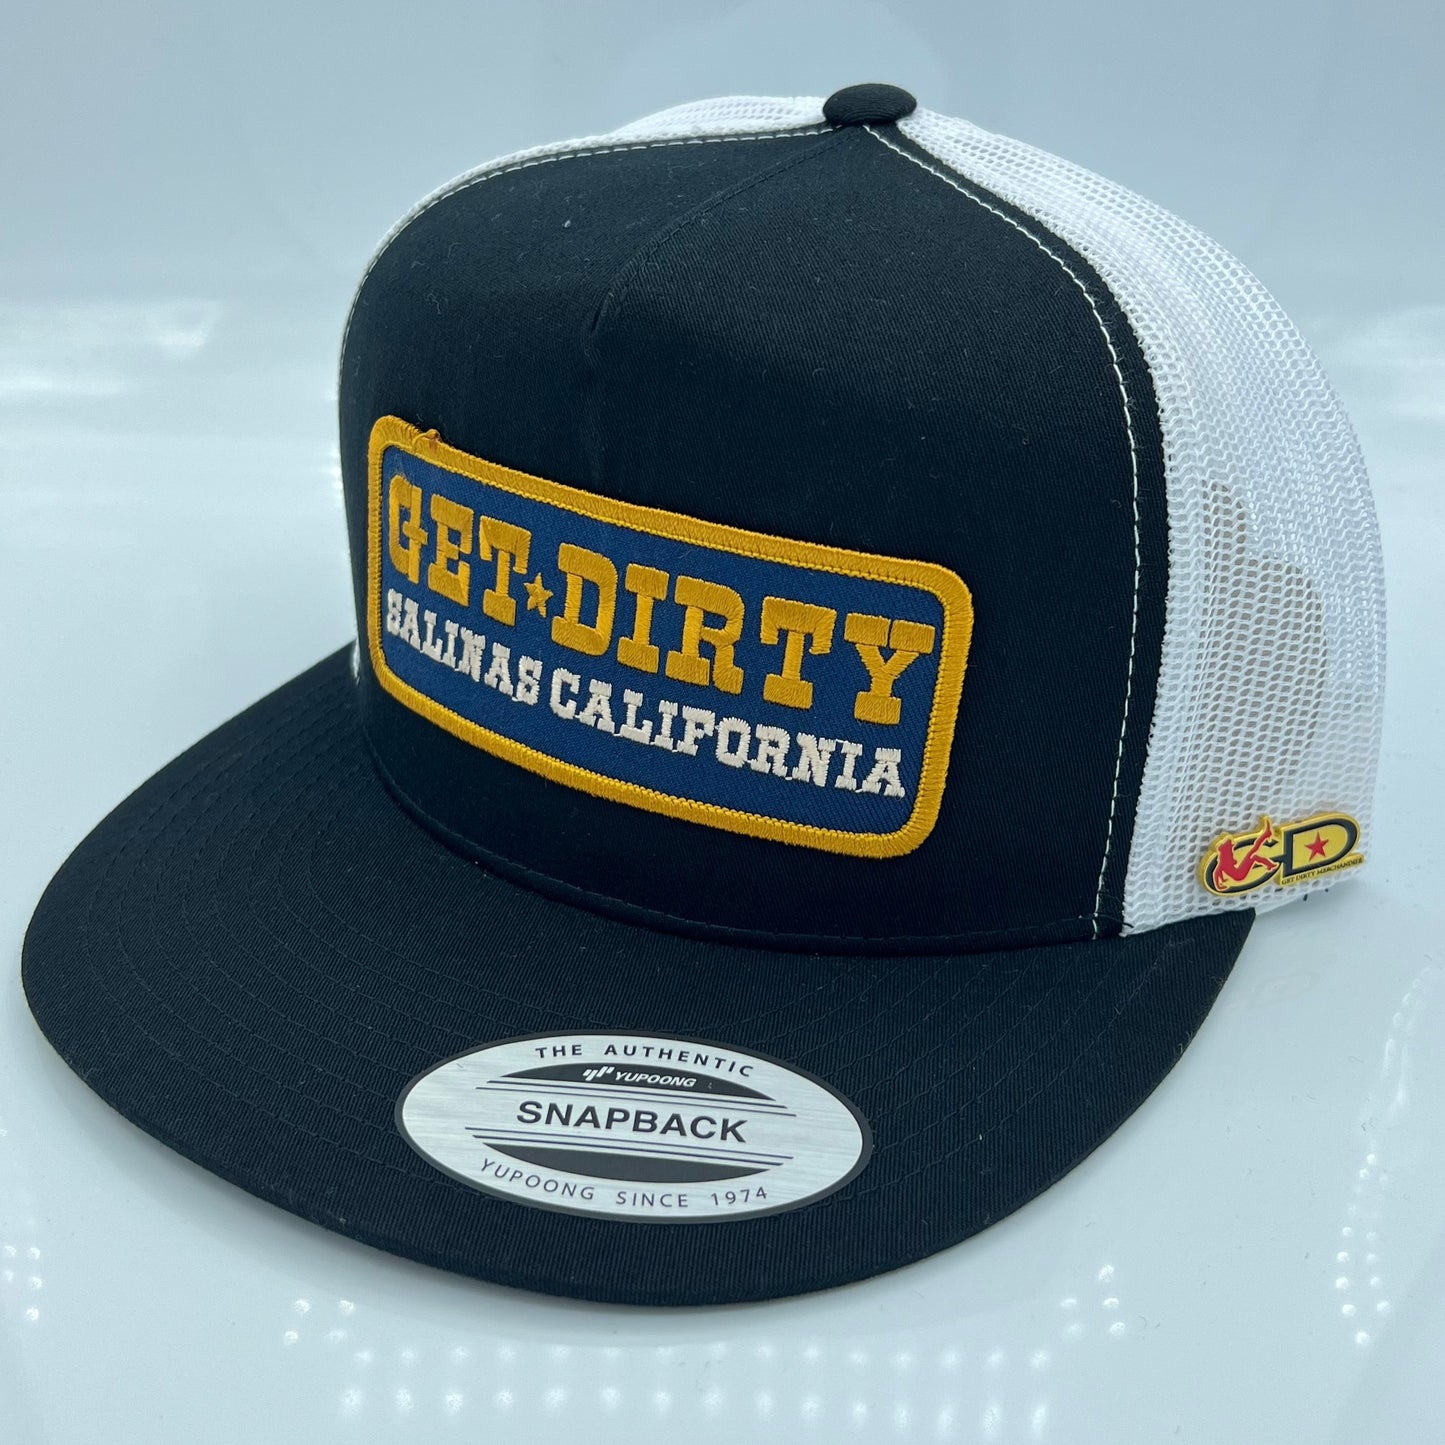 Get Dirty Merchandise BLU Arabella Blk/Wht Trucker Hat